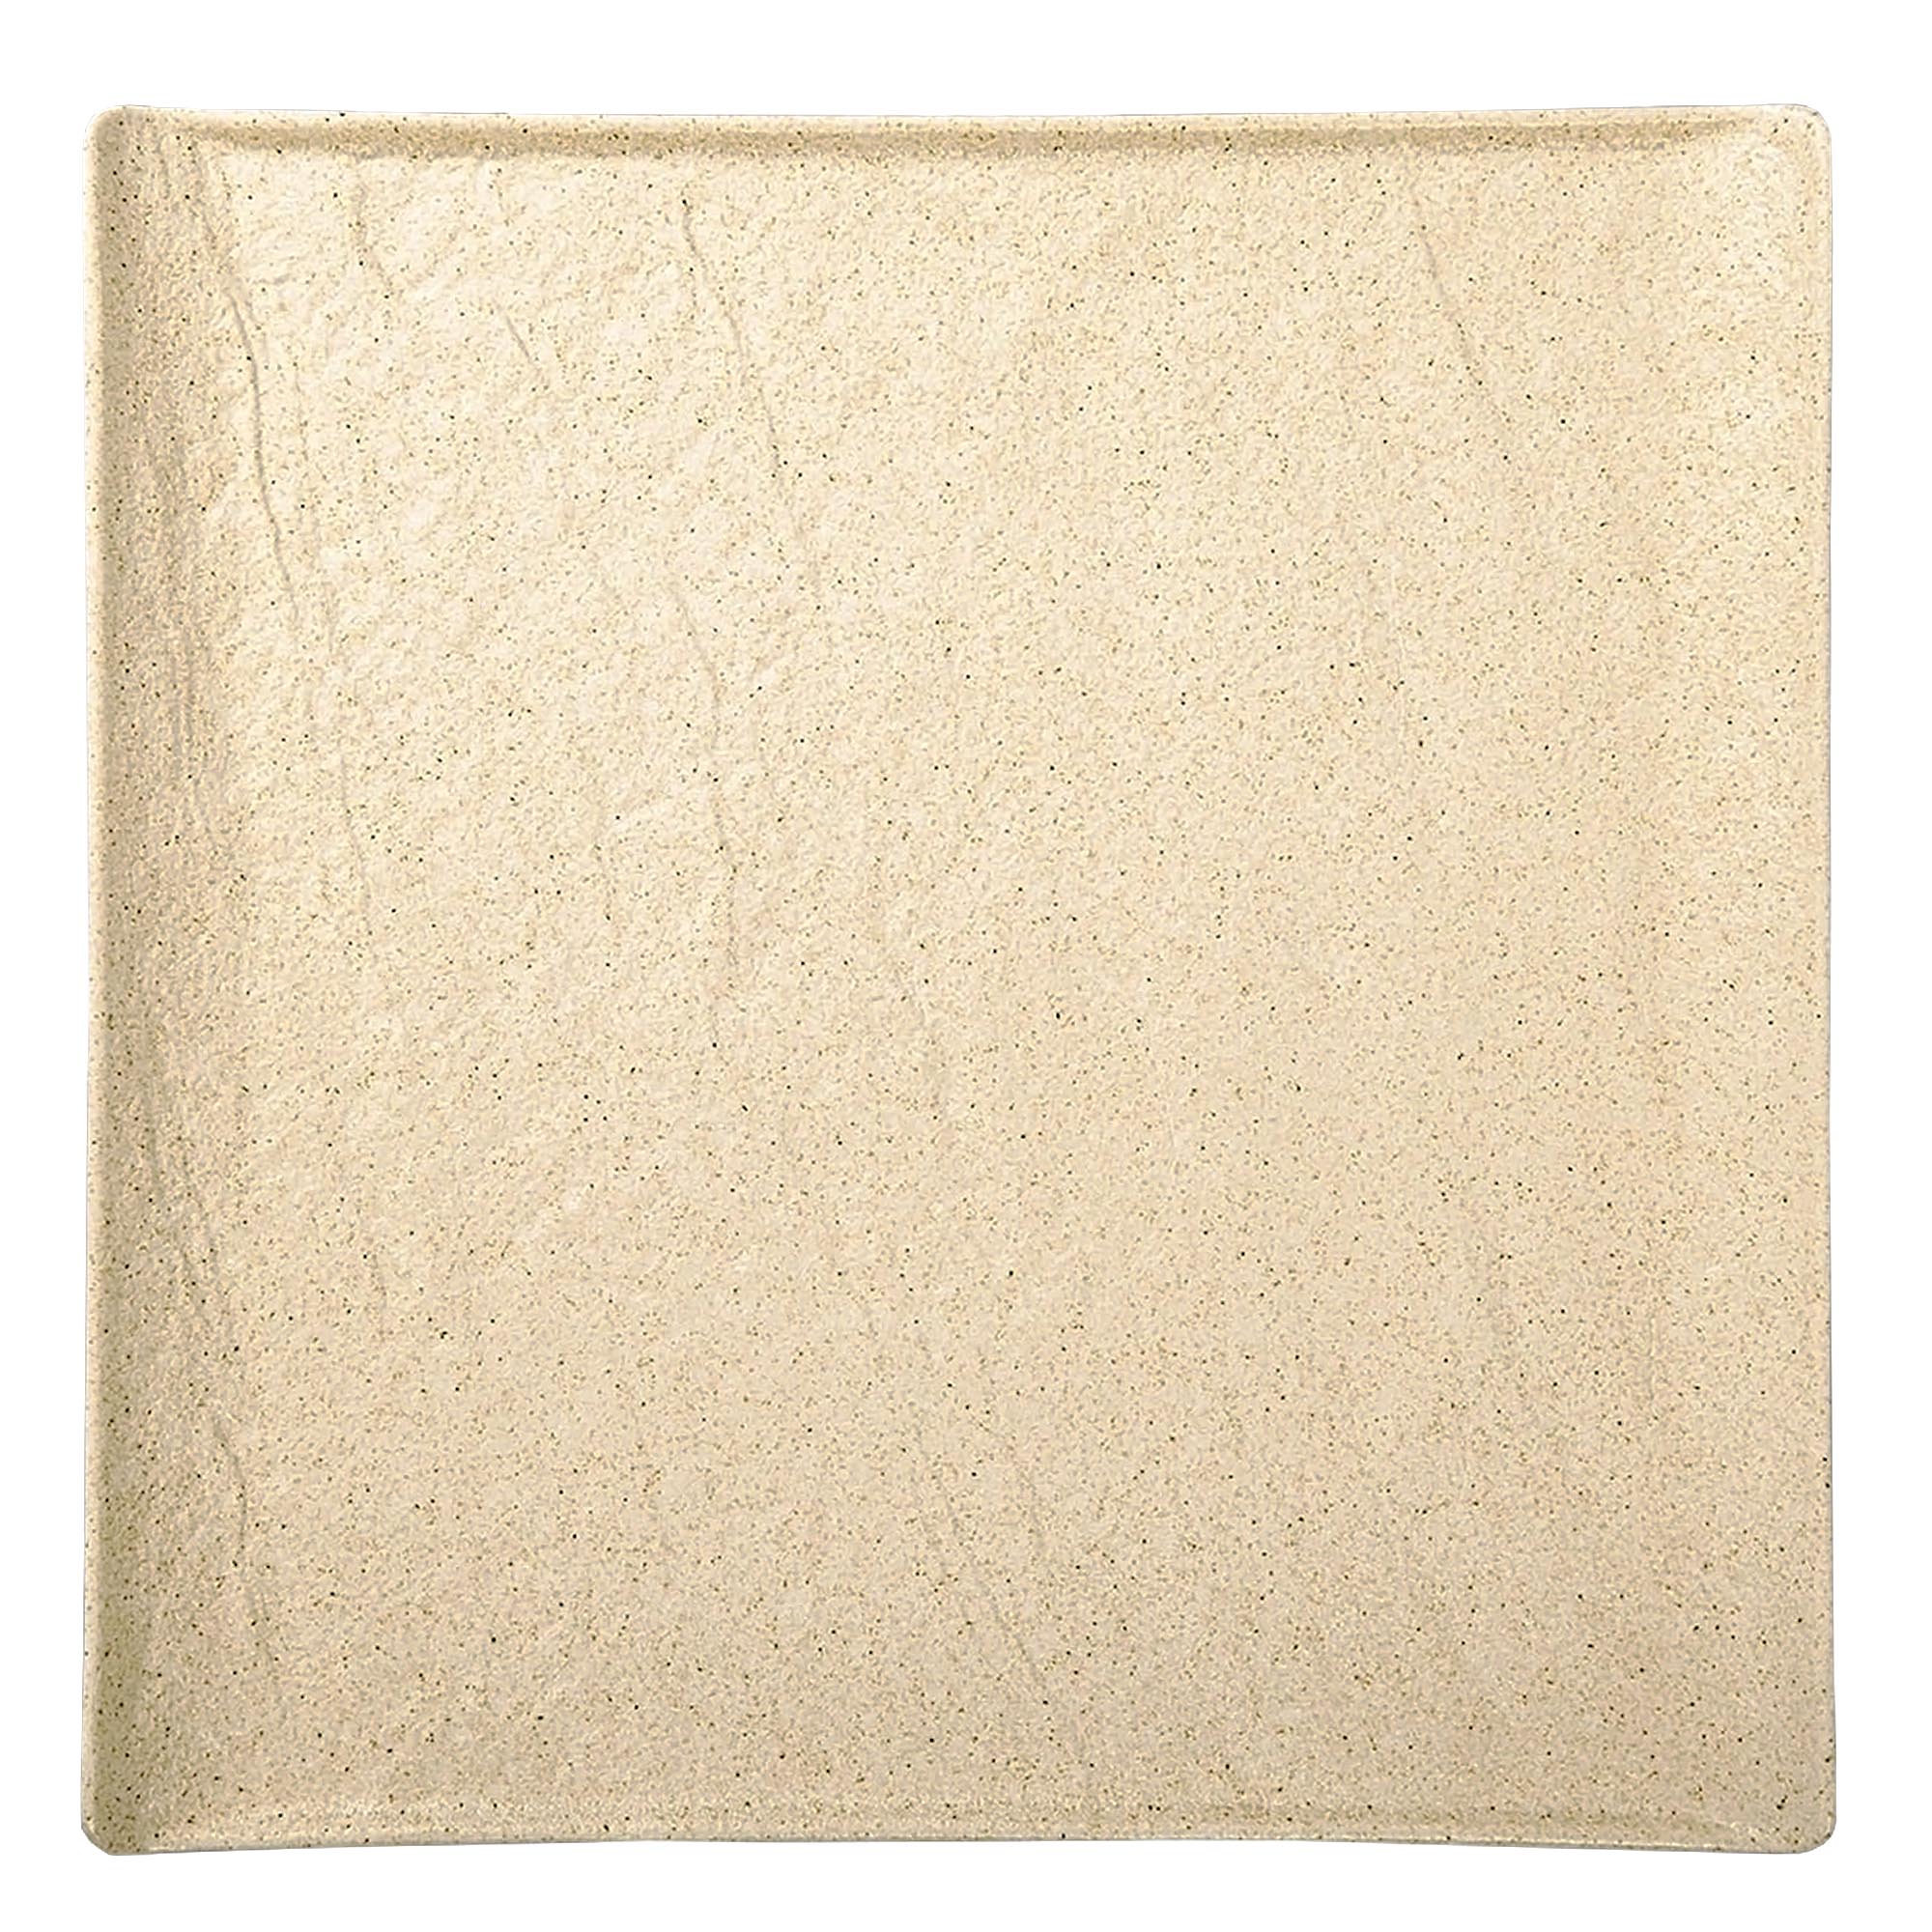 Тарелка квадратная Wilmax SandStone фарфор 17х17 см тарелка глубокая wilmax sandstone фарфор 25 5 см 350 мл